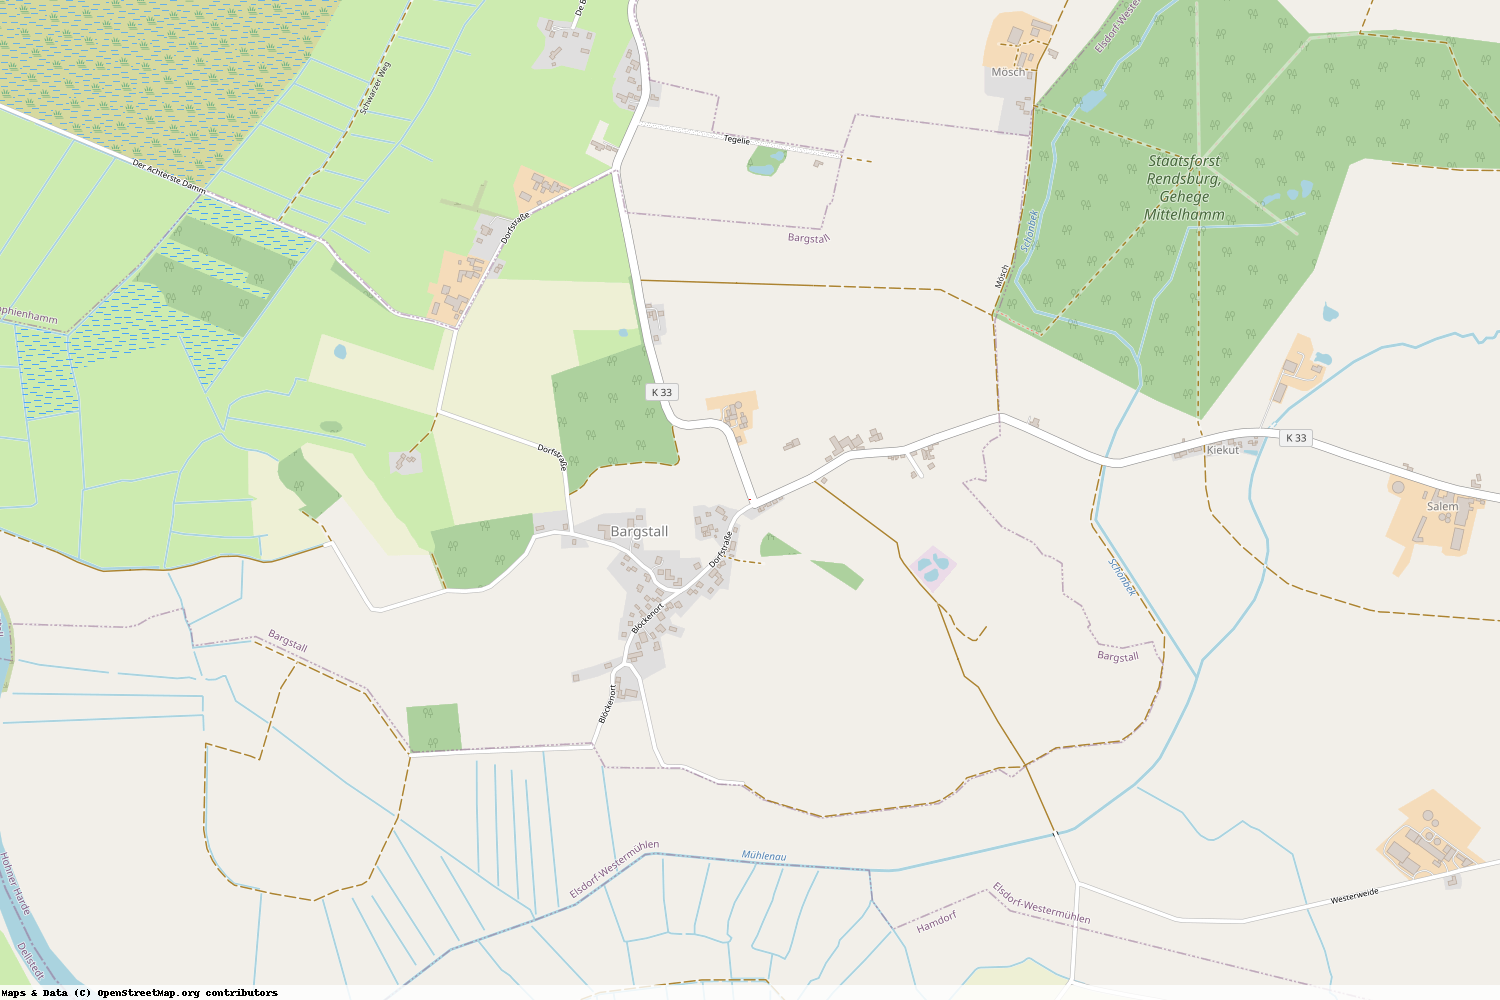 Ist gerade Stromausfall in Schleswig-Holstein - Rendsburg-Eckernförde - Bargstall?